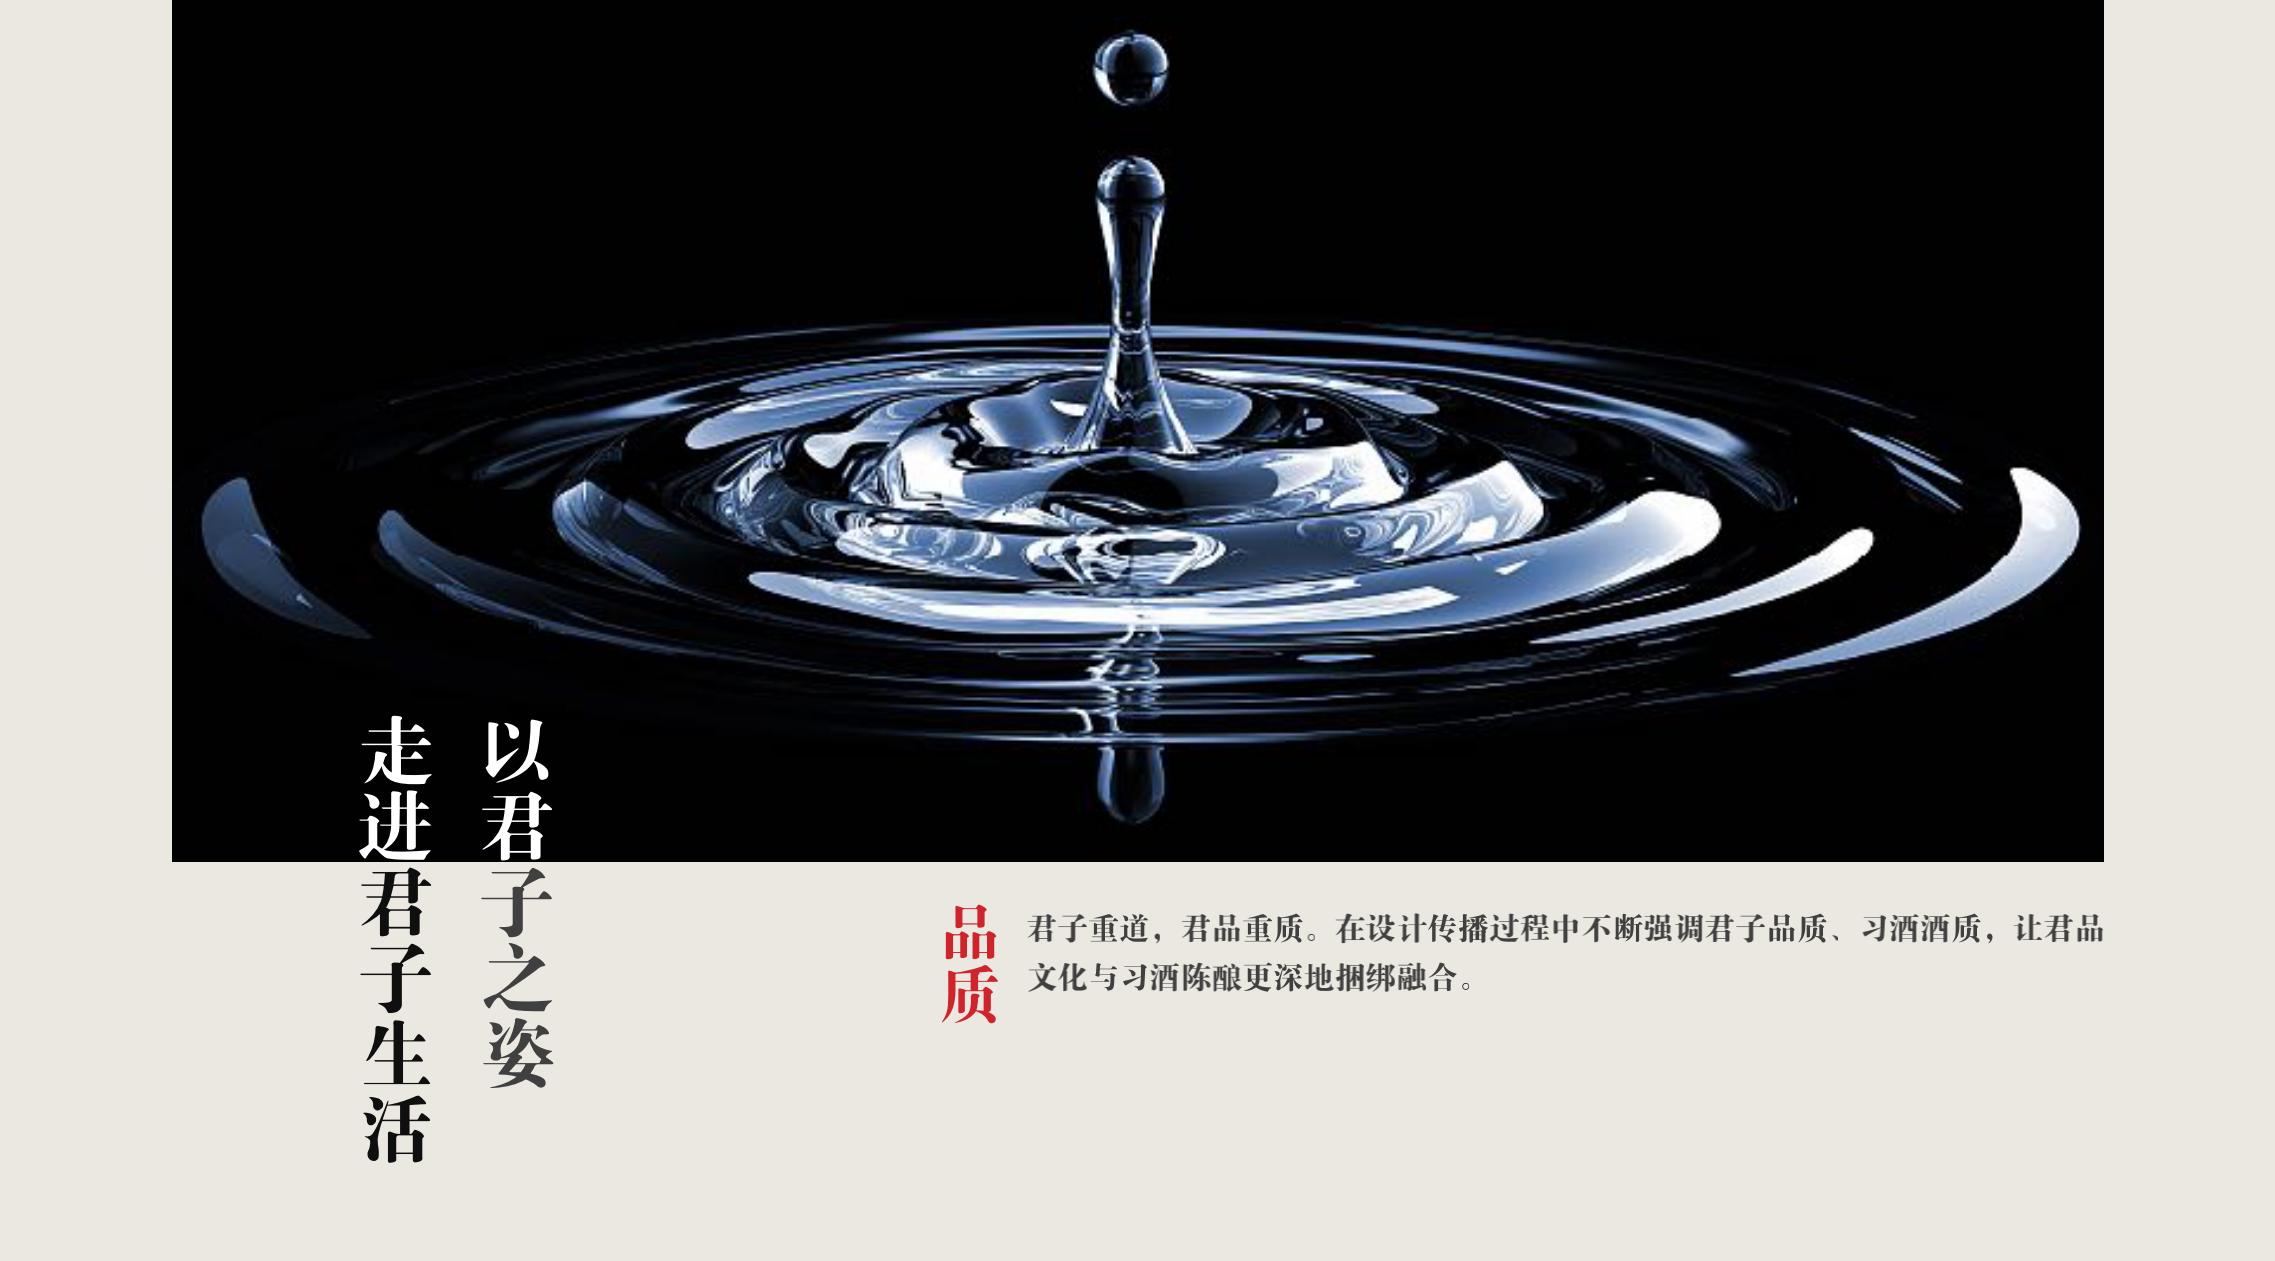 品牌策划 | 习酒平面图创意设计方案|广州活动执行